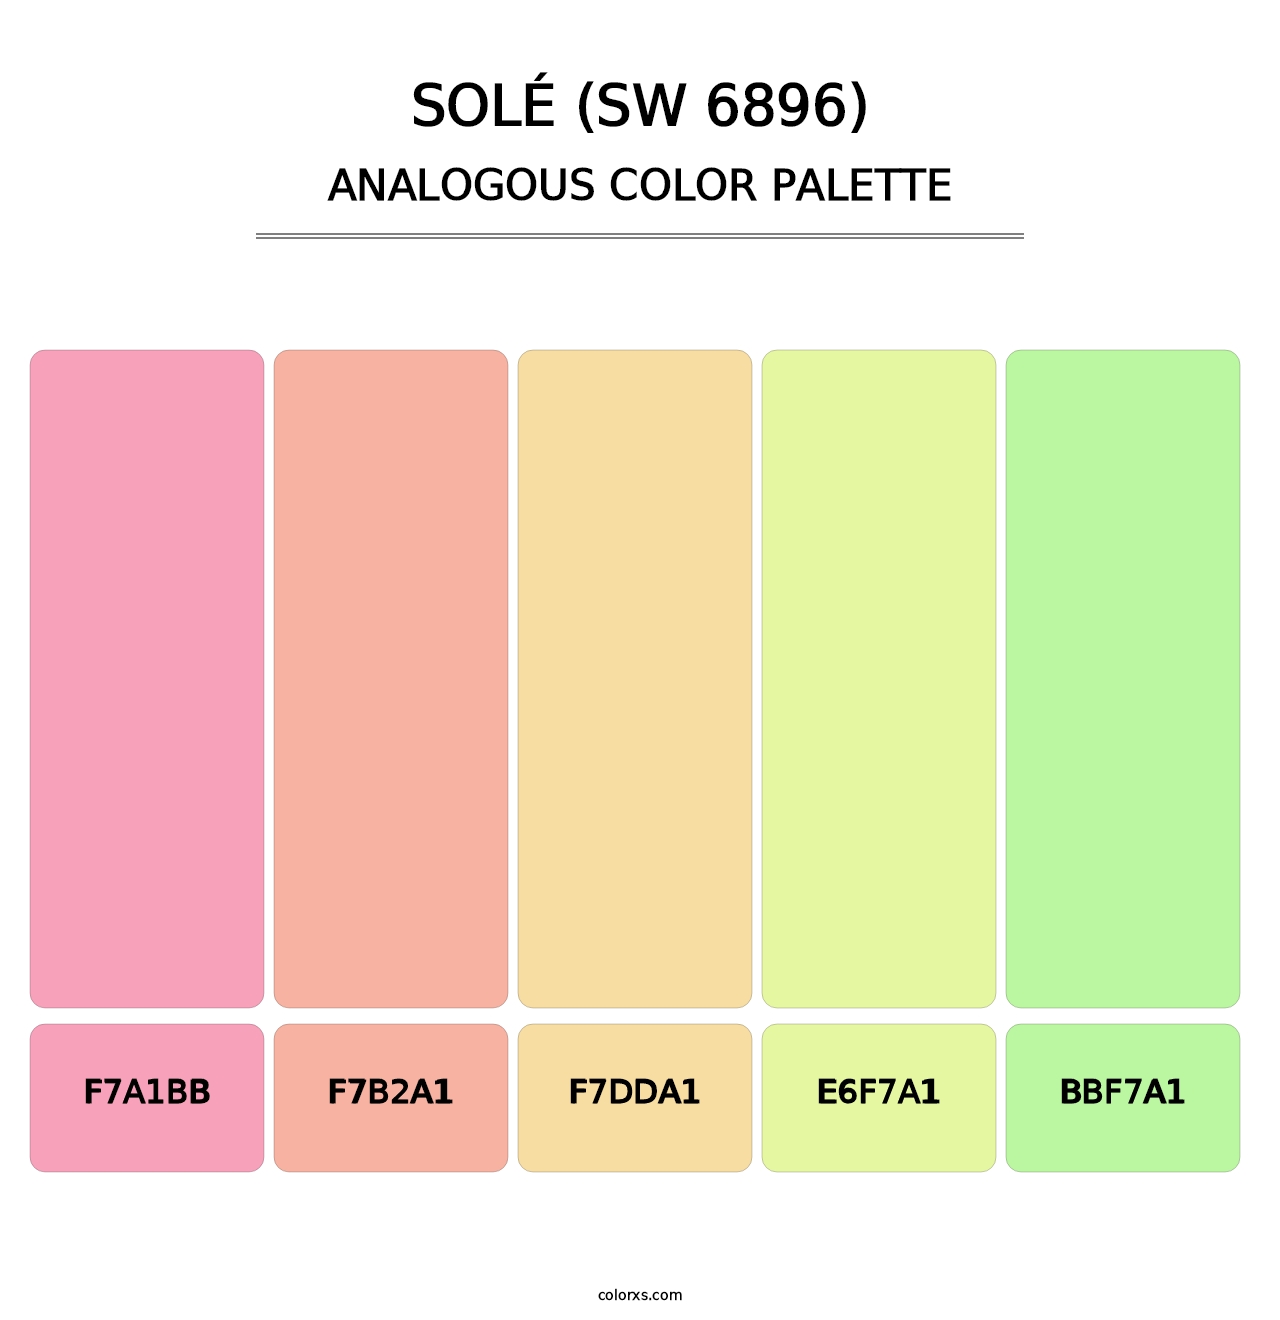 Solé (SW 6896) - Analogous Color Palette